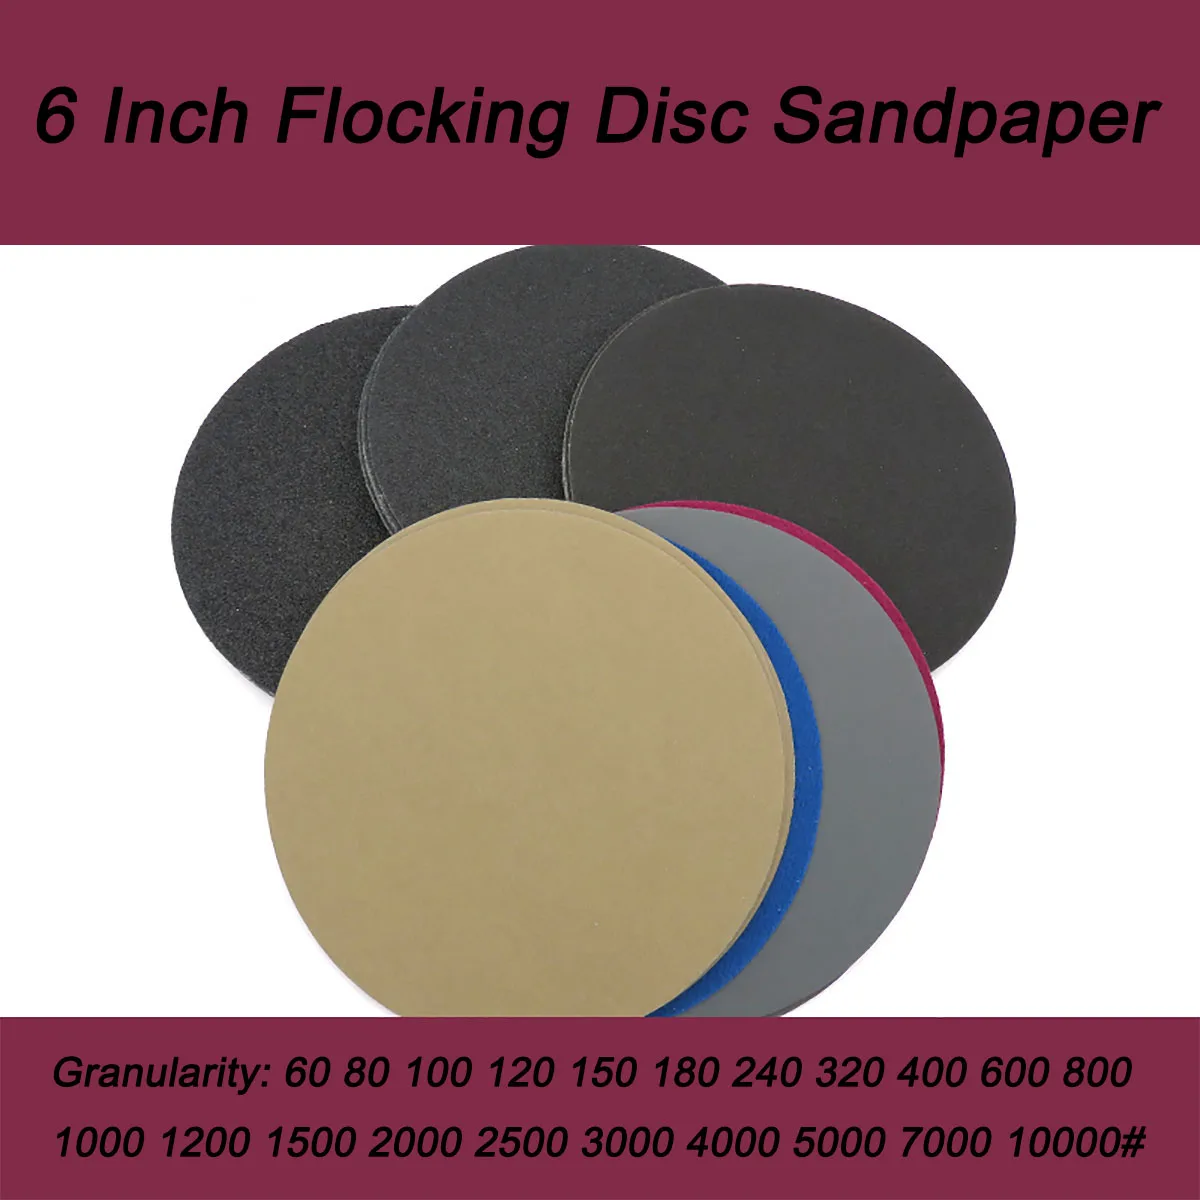 5Pcs Tamanho de 6 Polegadas de Secos e Molhados Reunindo Disco Sandpapers Granularidade de 60 10000# e Diâmetro de 150 mm, para Polimento e Retificação